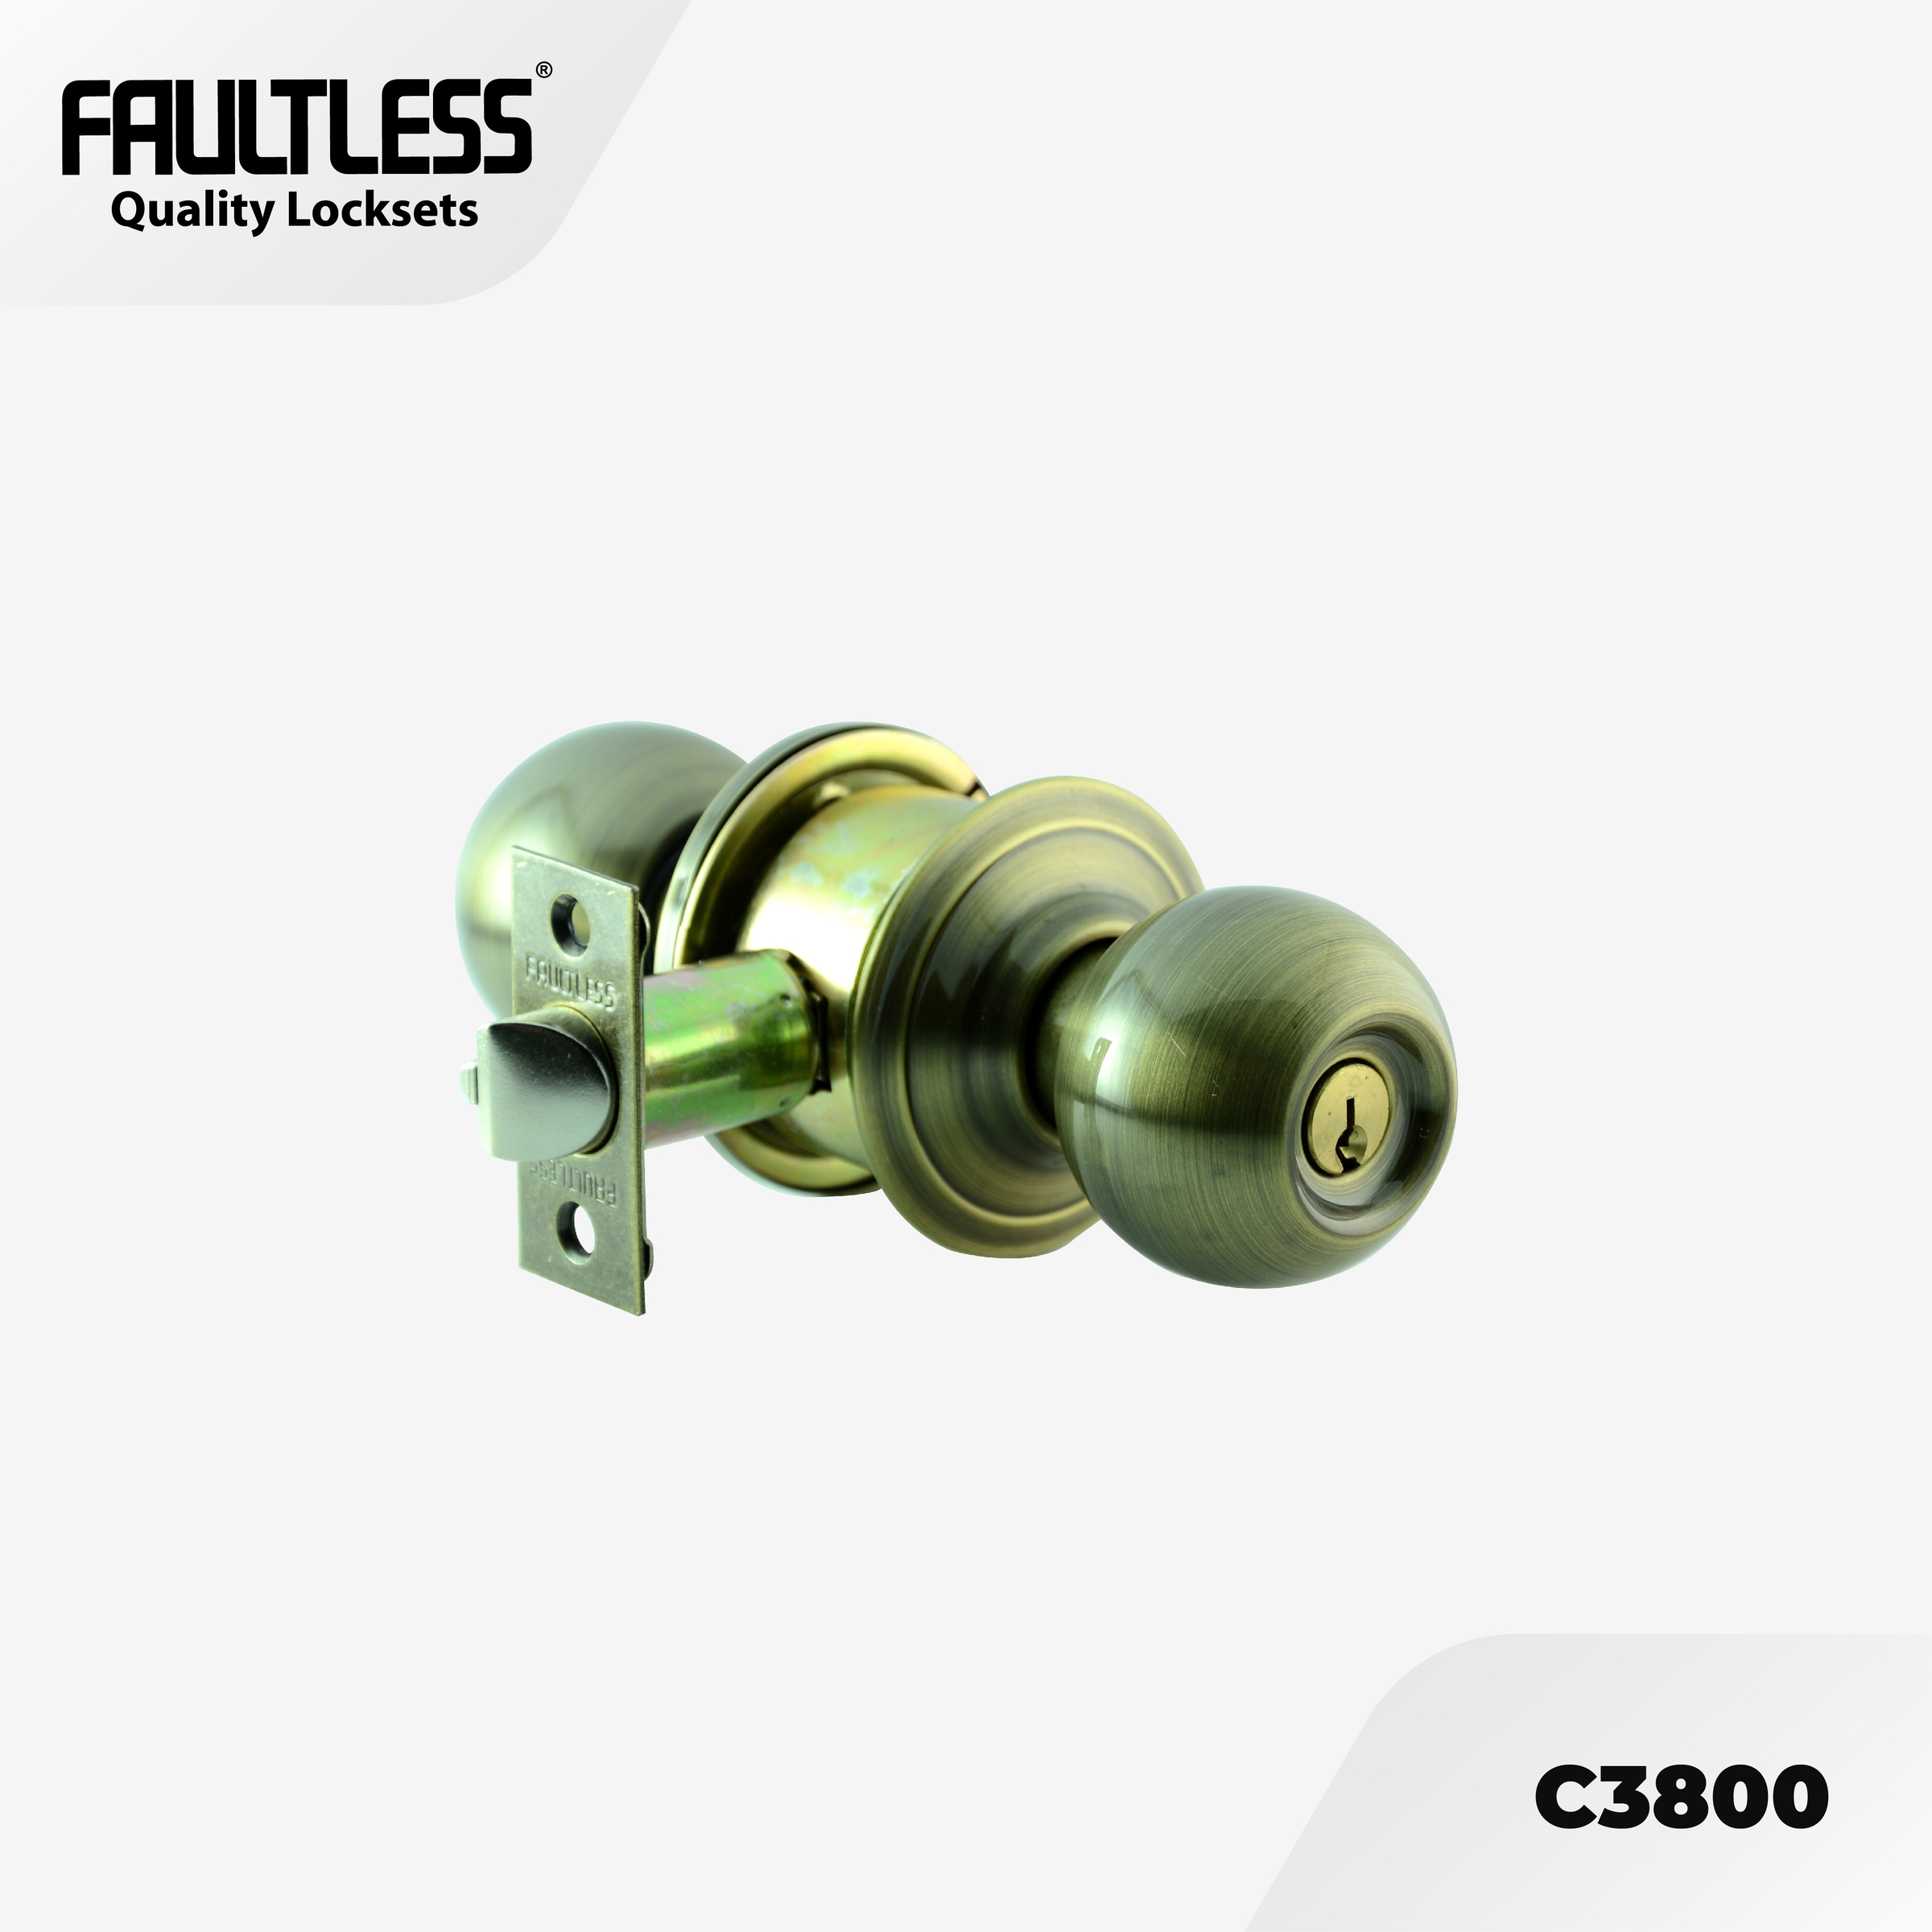 Faultless Knobset C3800